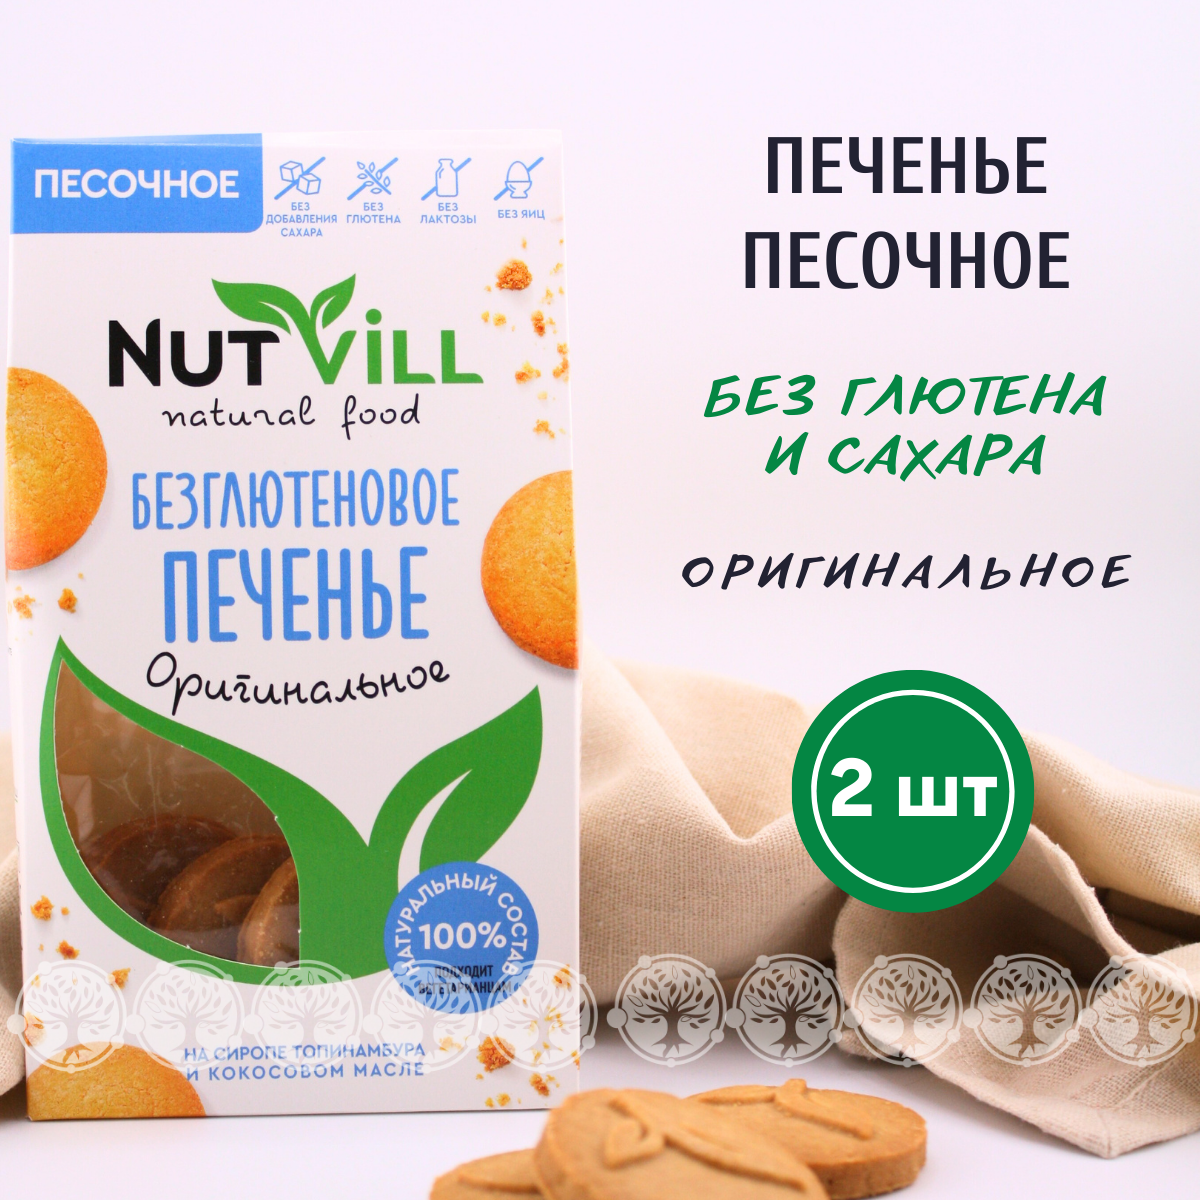 Печенье песочное NutVill "Оригинальное" без сахара без глютена 2 шт х 100г